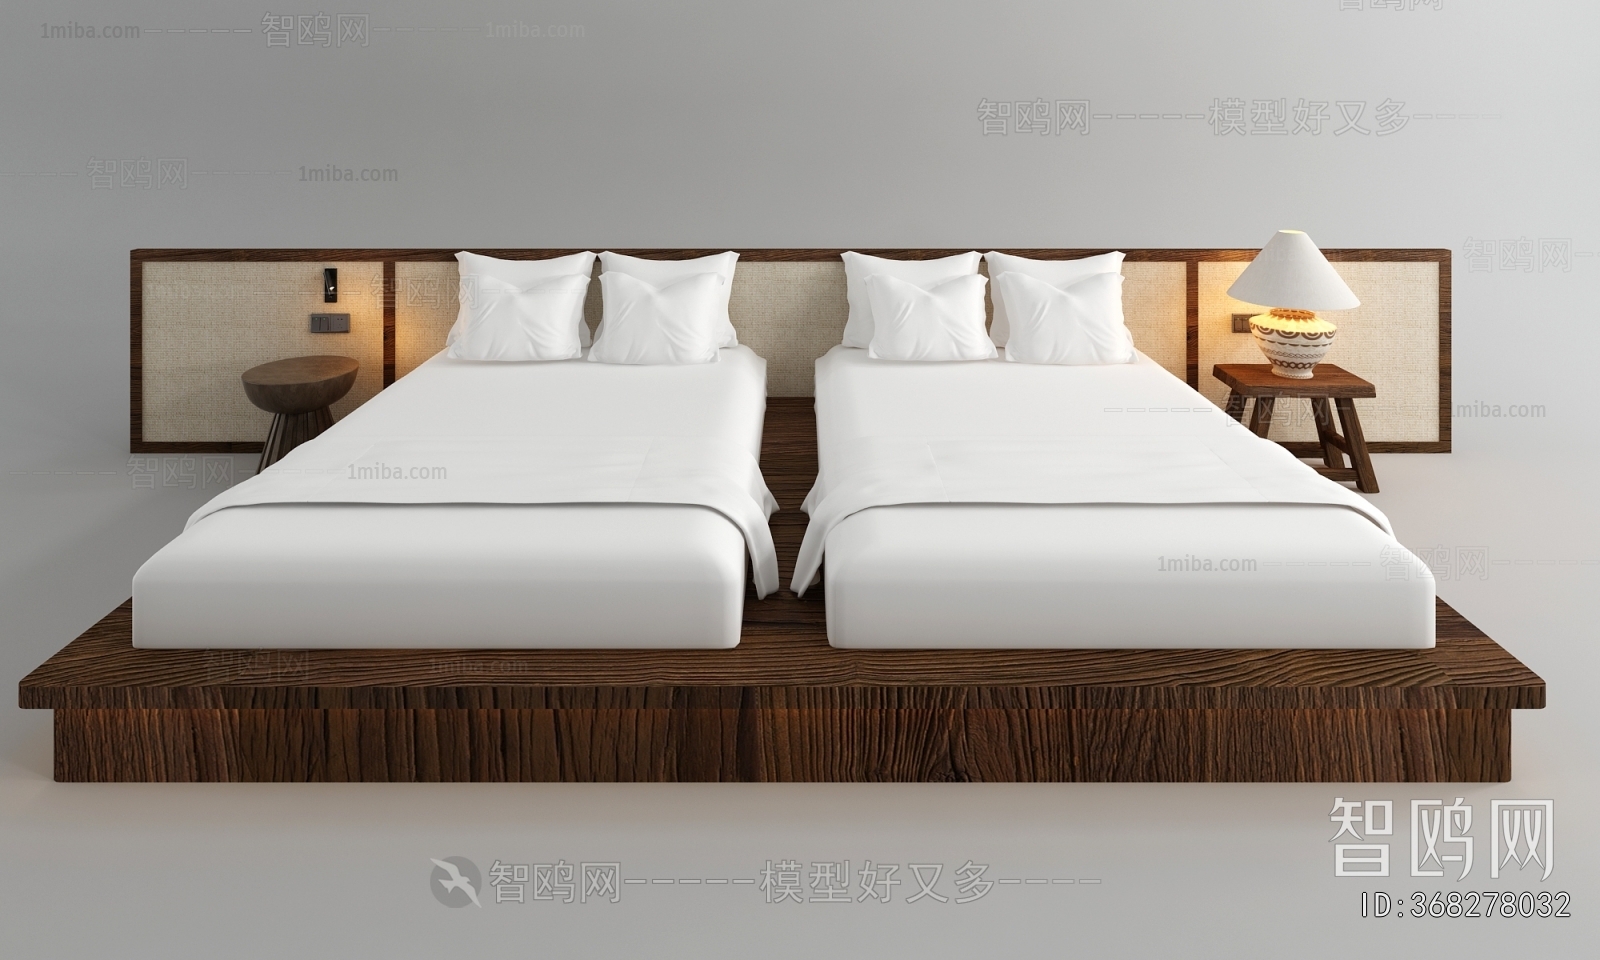 Wabi-sabi Style Single Bed